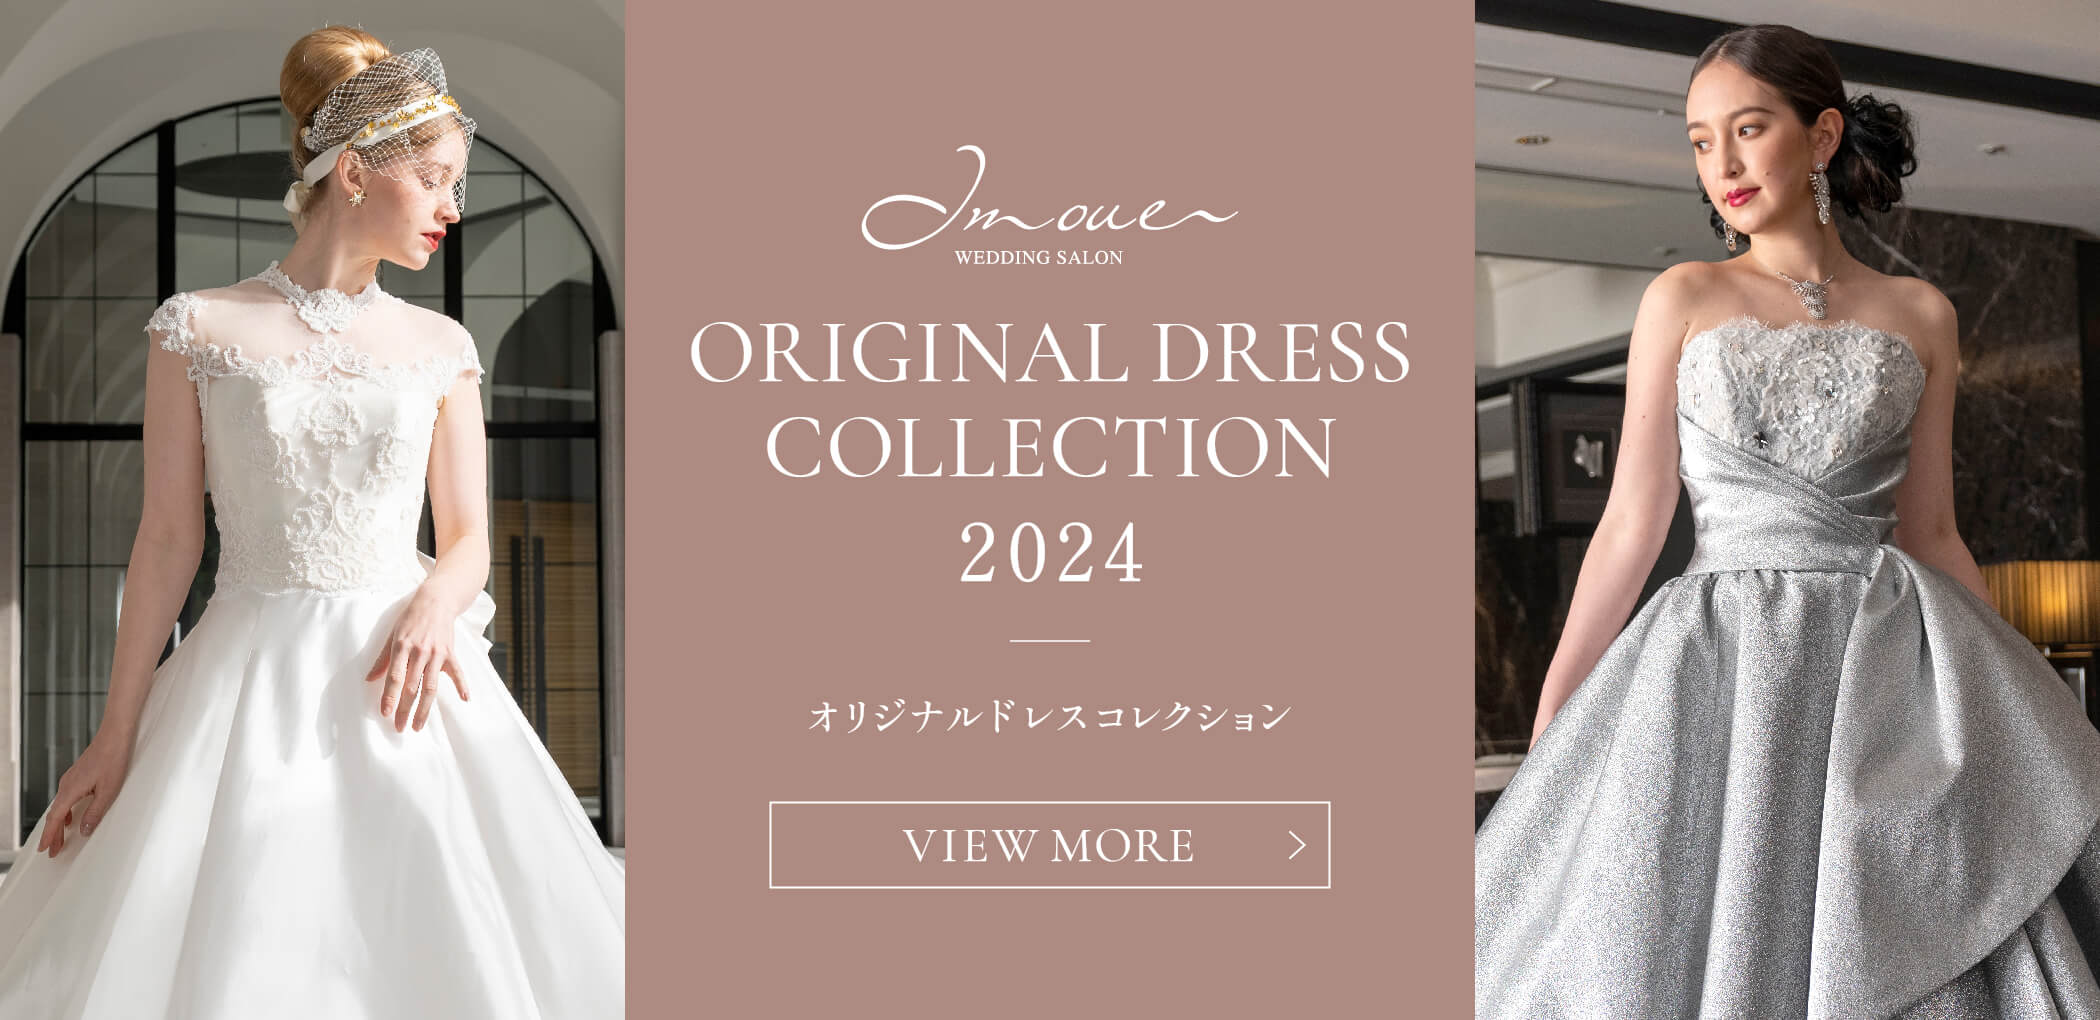 ORIGINAL DRESS COLLECTION オリジナルドレスコレクション 2023